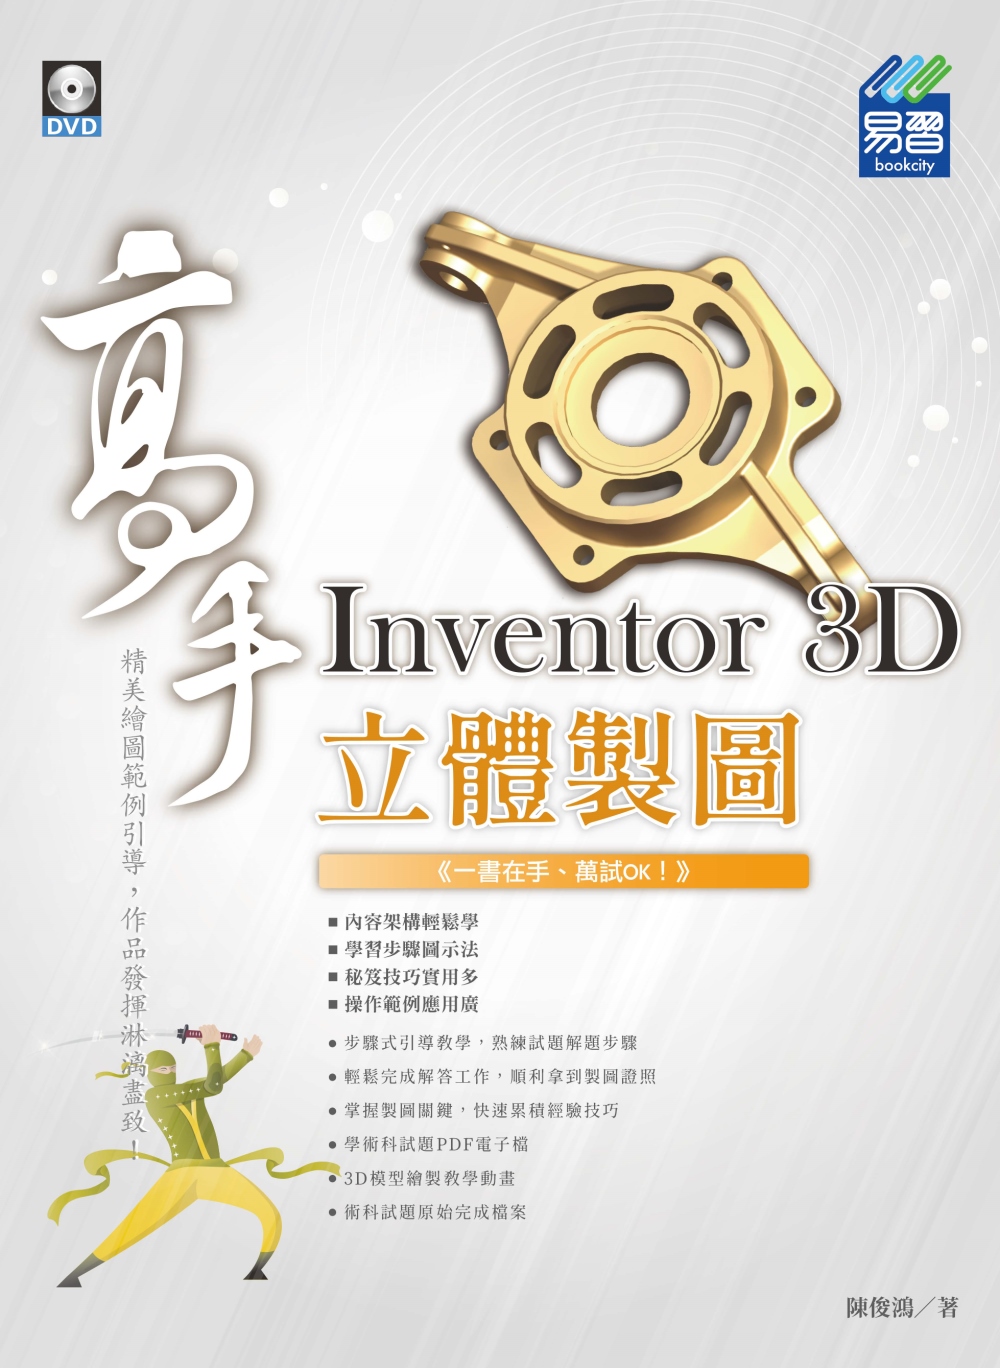 Inventor 3D 立體製圖 高手